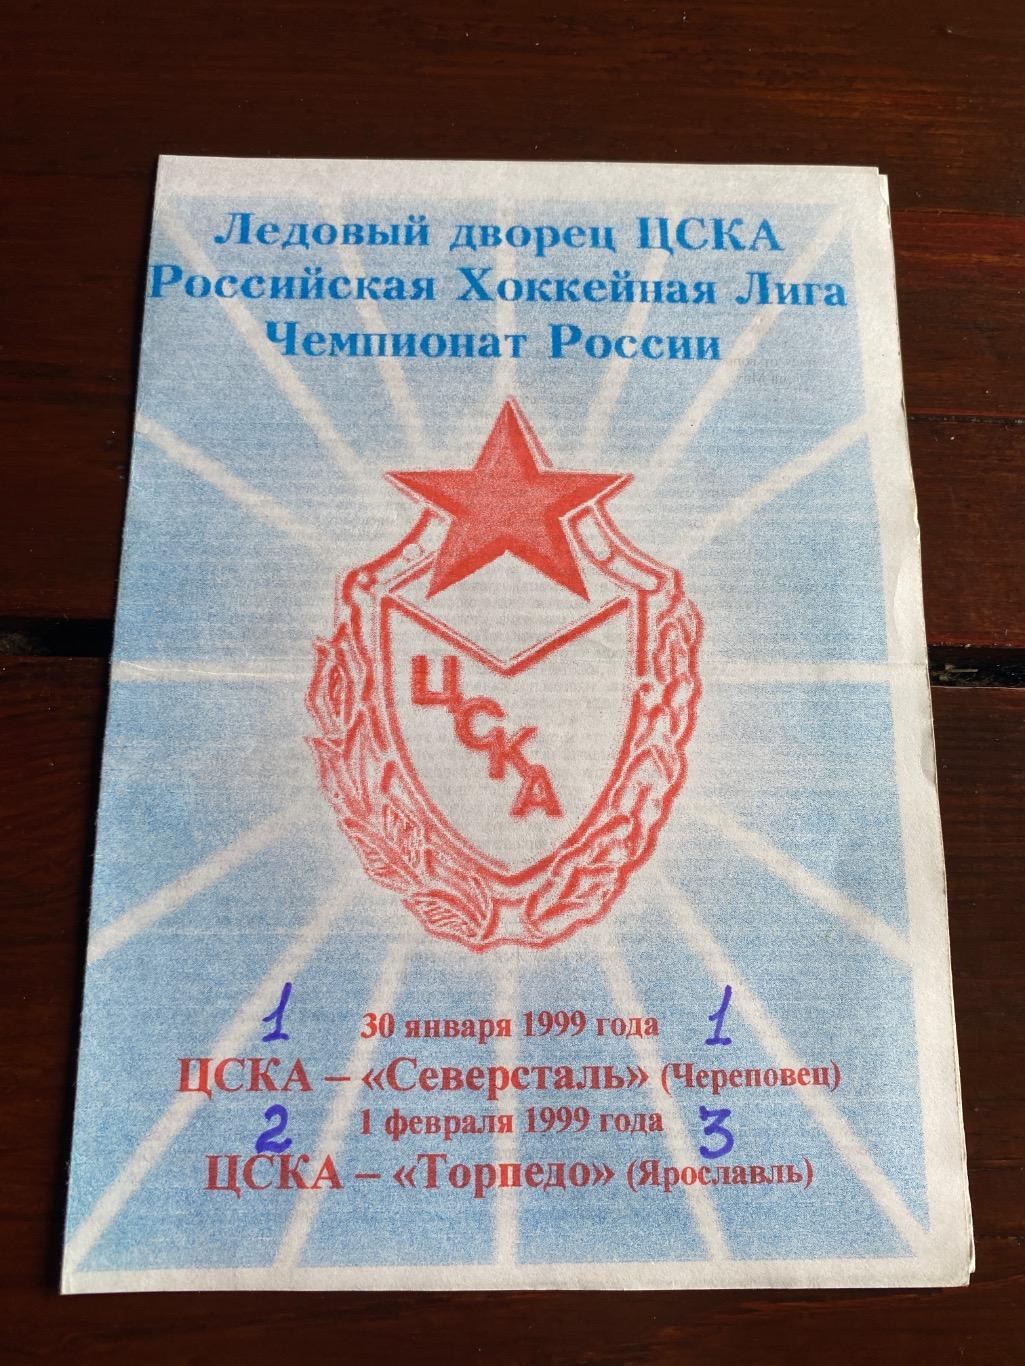 Программа ЦСКА - Северсталь Торпедо 1999